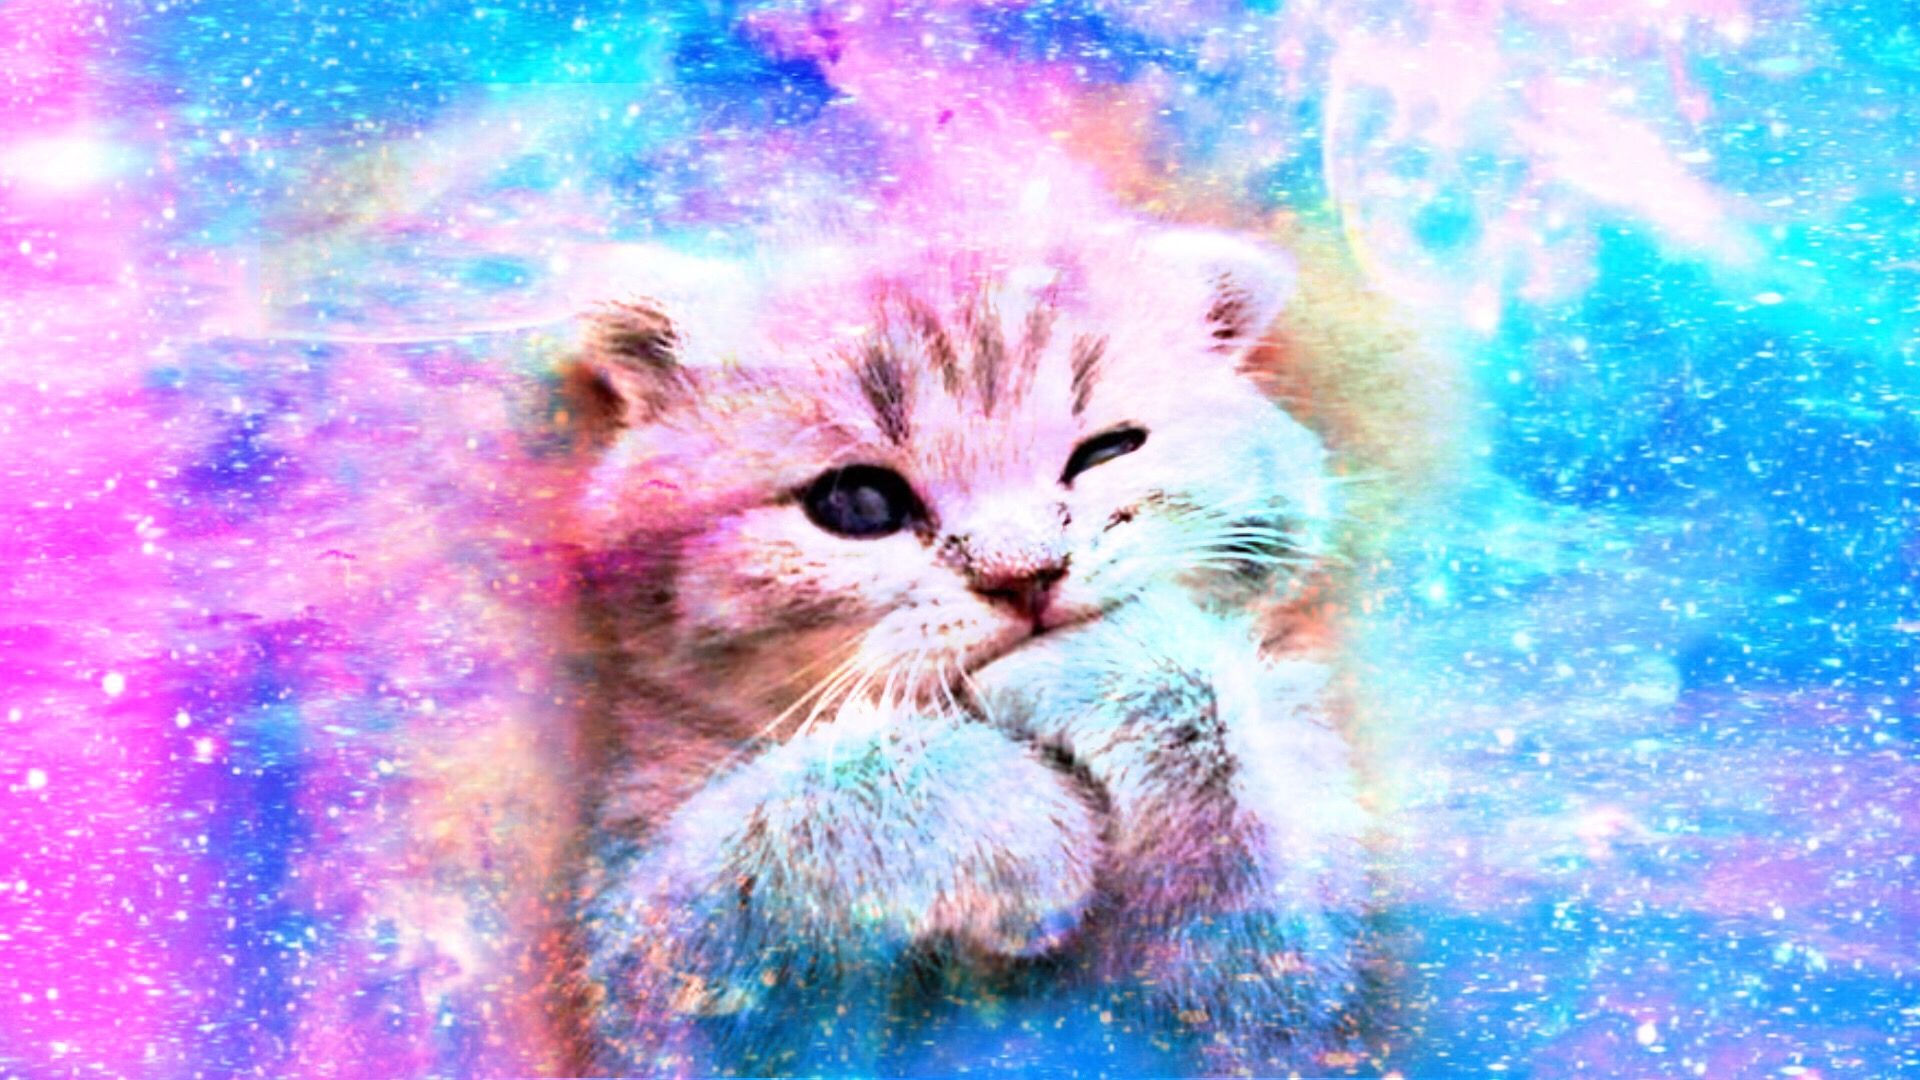 Bạn muốn tìm kiếm một hình nền đáng yêu cho điện thoại hay máy tính của mình? Hãy xem thử những hình nền với chủ đề mèo con hồng dễ thương này. Chúng sẽ khiến cho màn hình của bạn trở nên vui mắt hơn bao giờ hết.